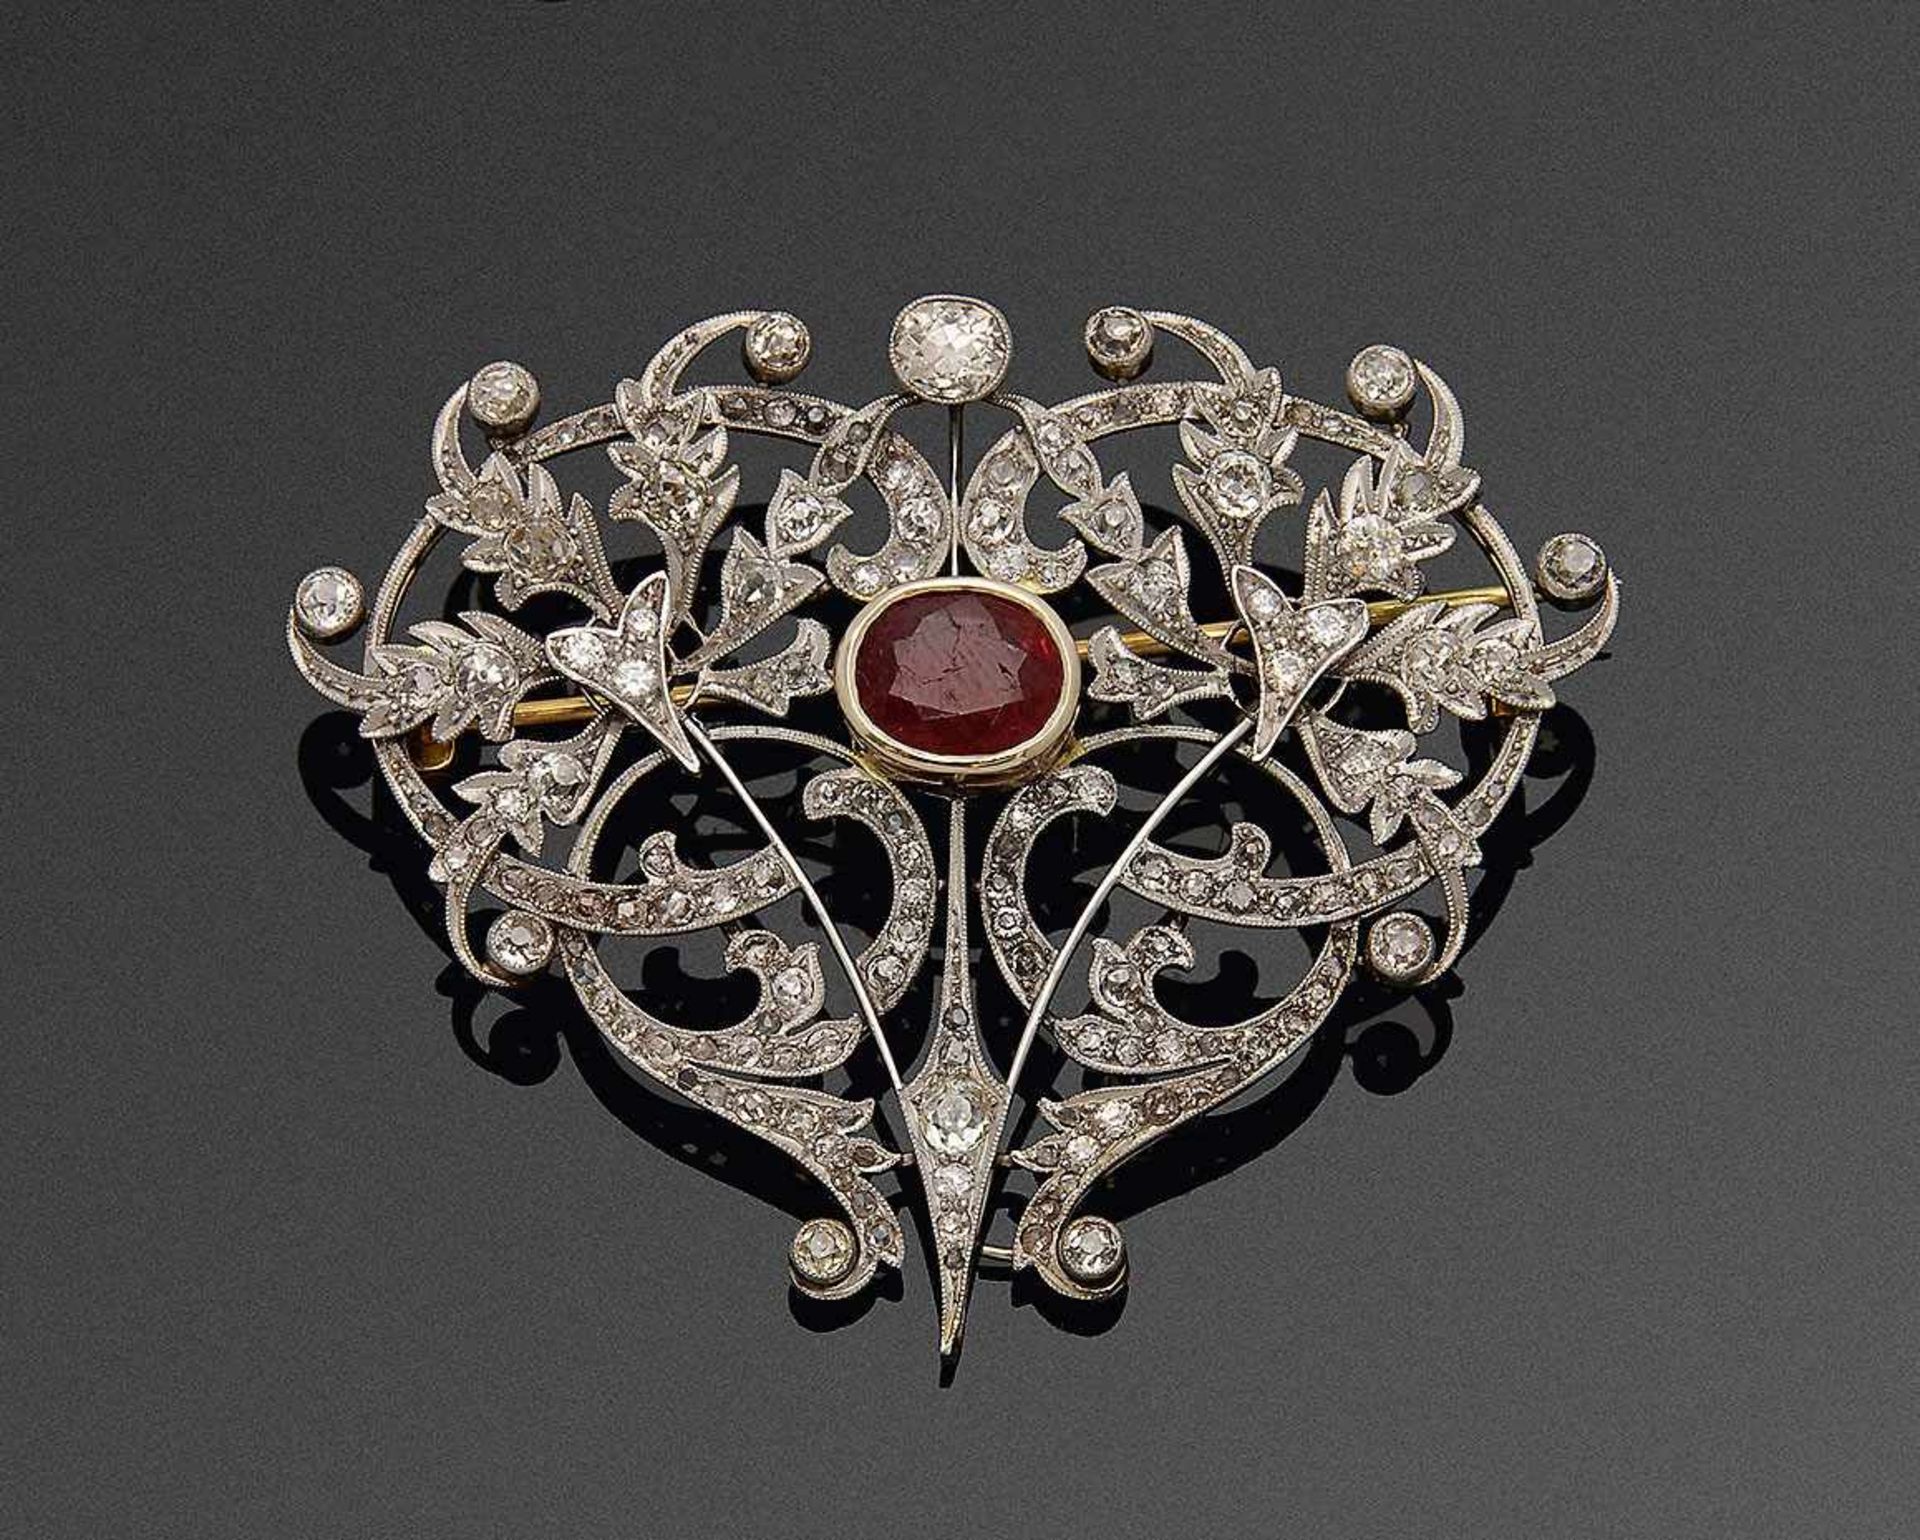 Viktorianische RubinbroscheWeißgold, 18 ct. Schauseitig ausgefasst mit Diamantrosen von zus. ca. 3,